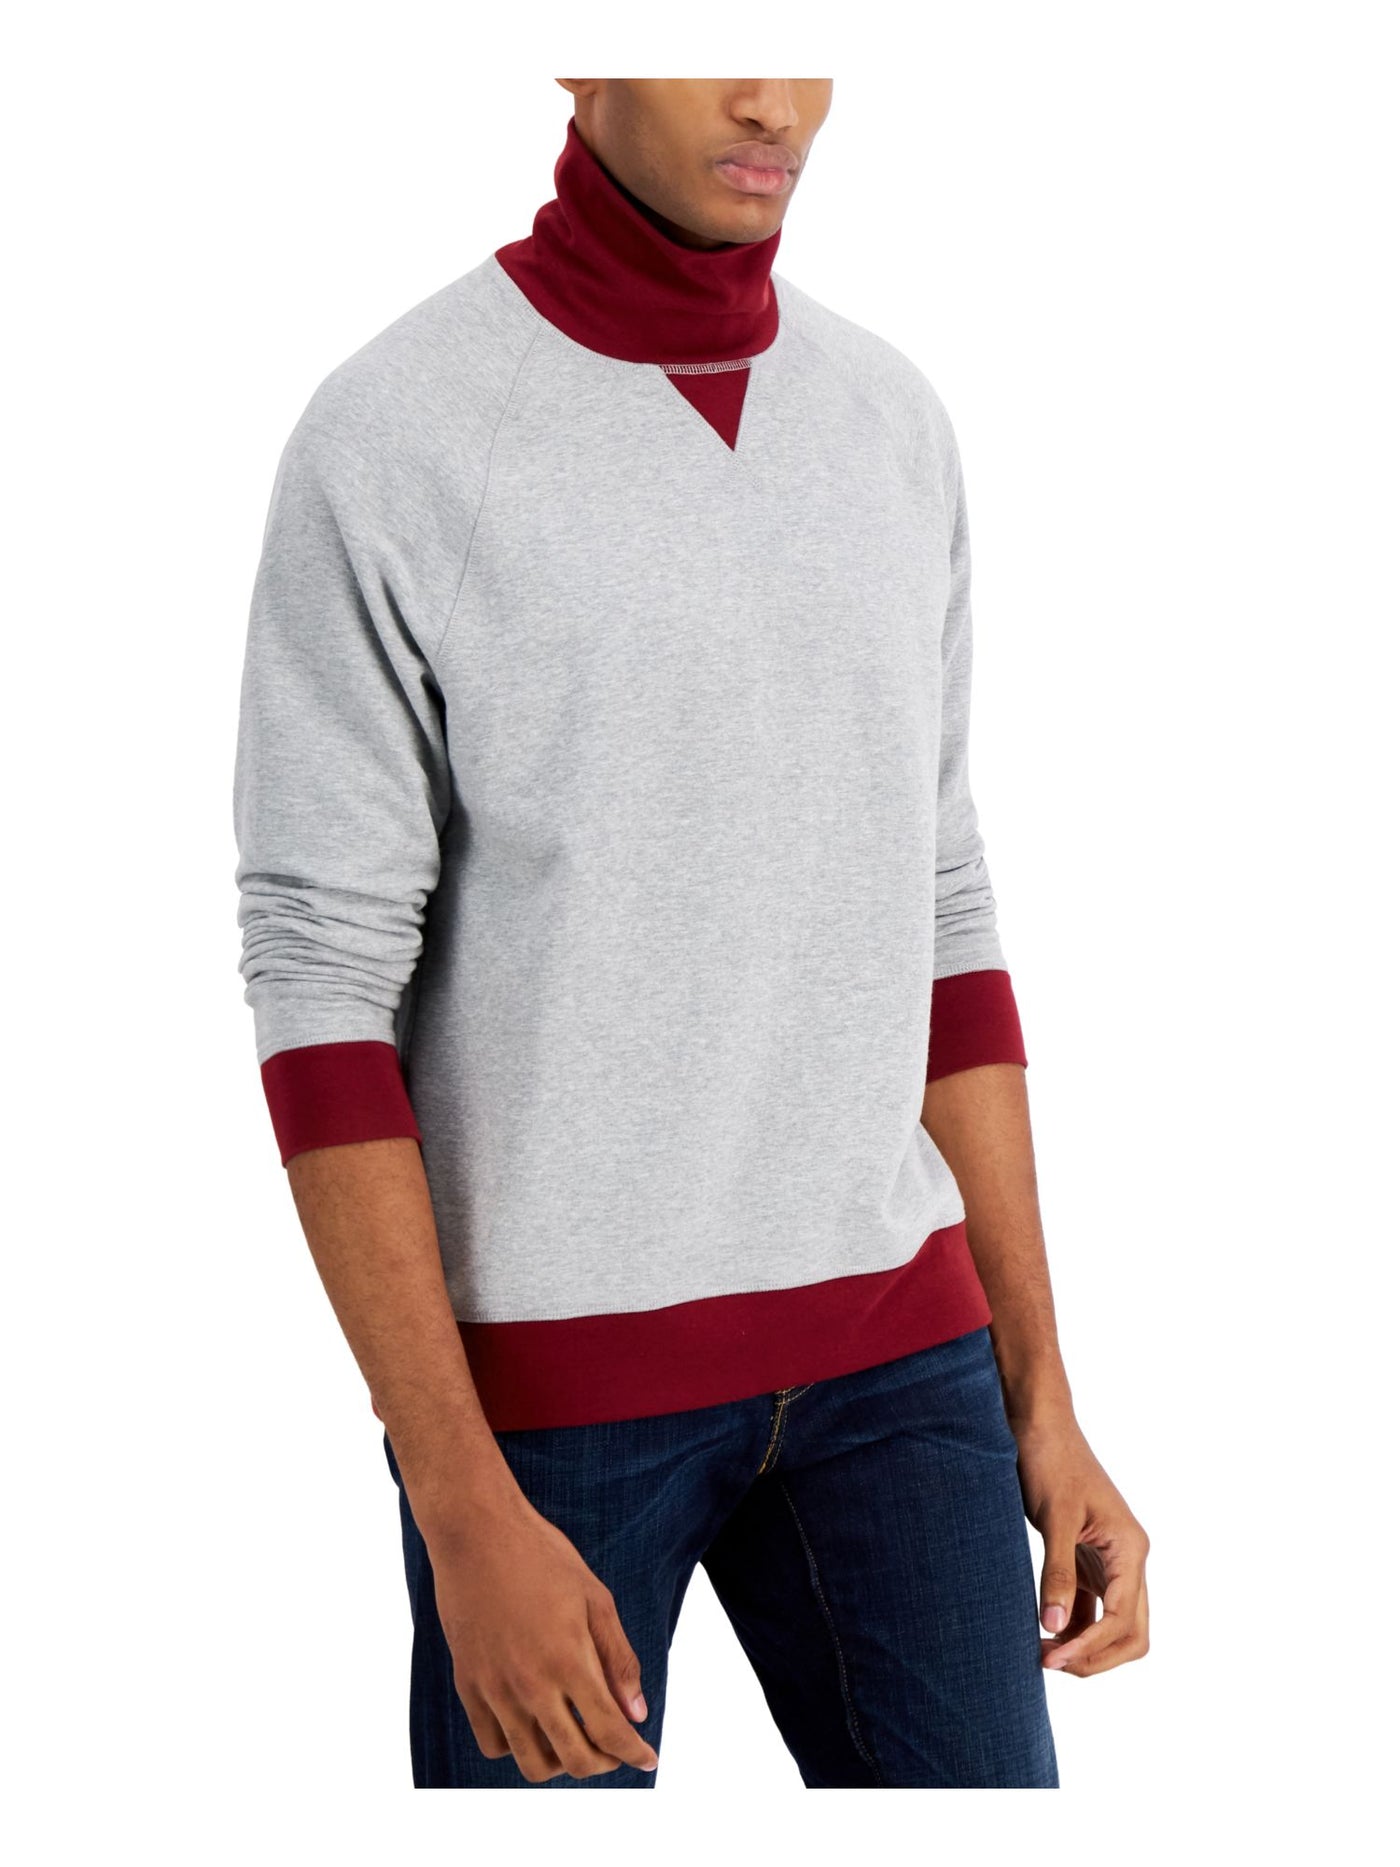 CLUBROOM Mens Gray Turtle Neck Classic Fit Fleece Sweatshirt XL